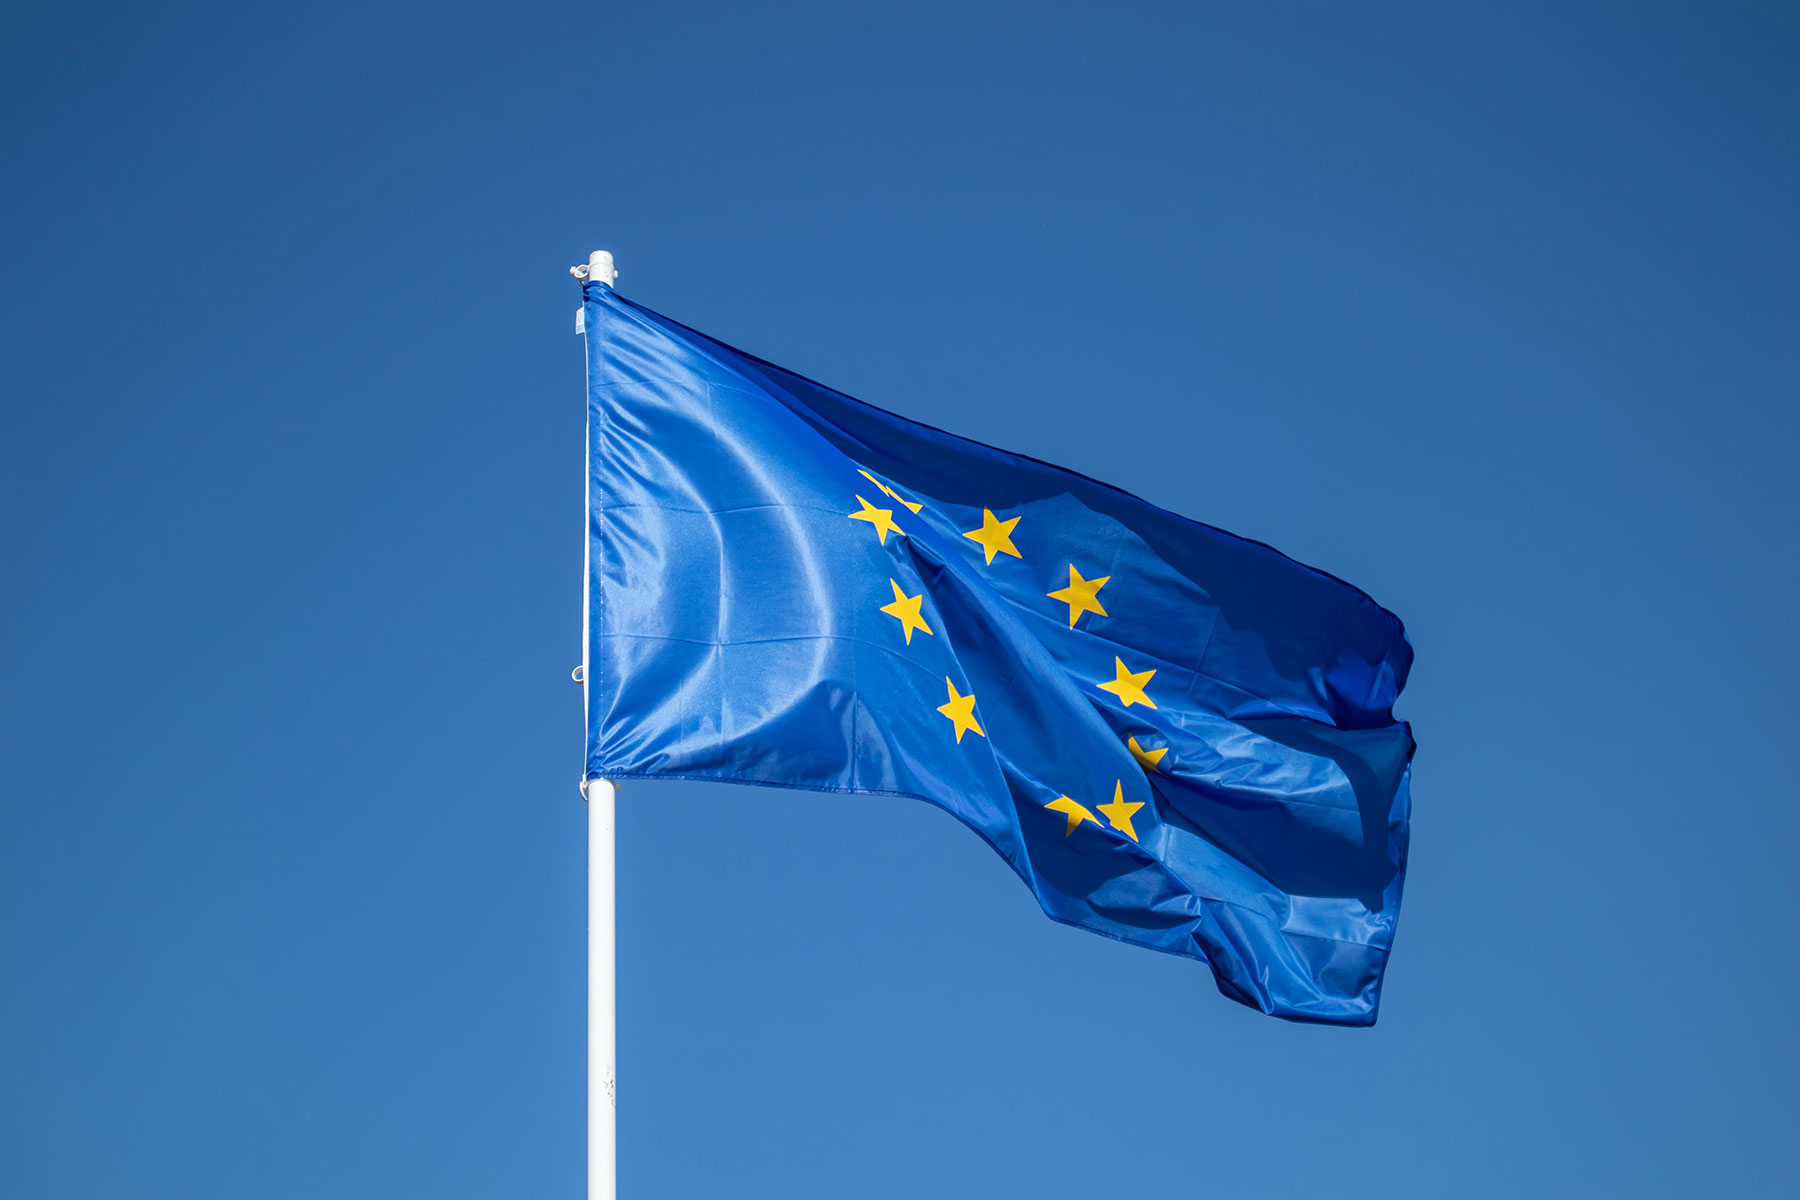 European Union's flag